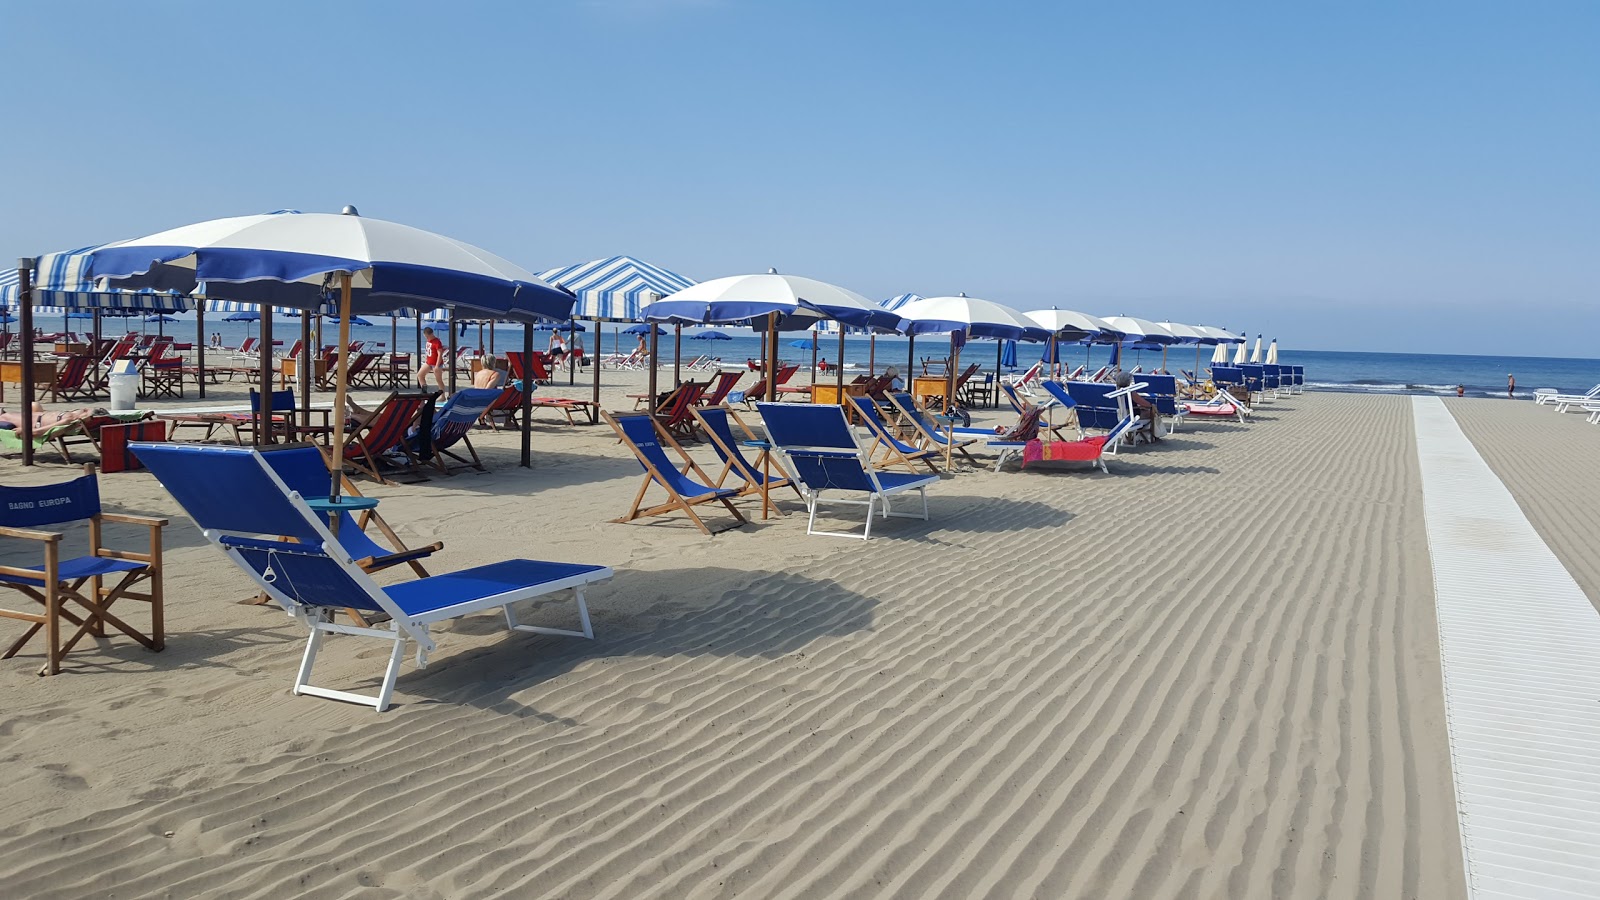 Foto von Spiaggia Marina di Pietrasanta - beliebter Ort unter Entspannungskennern